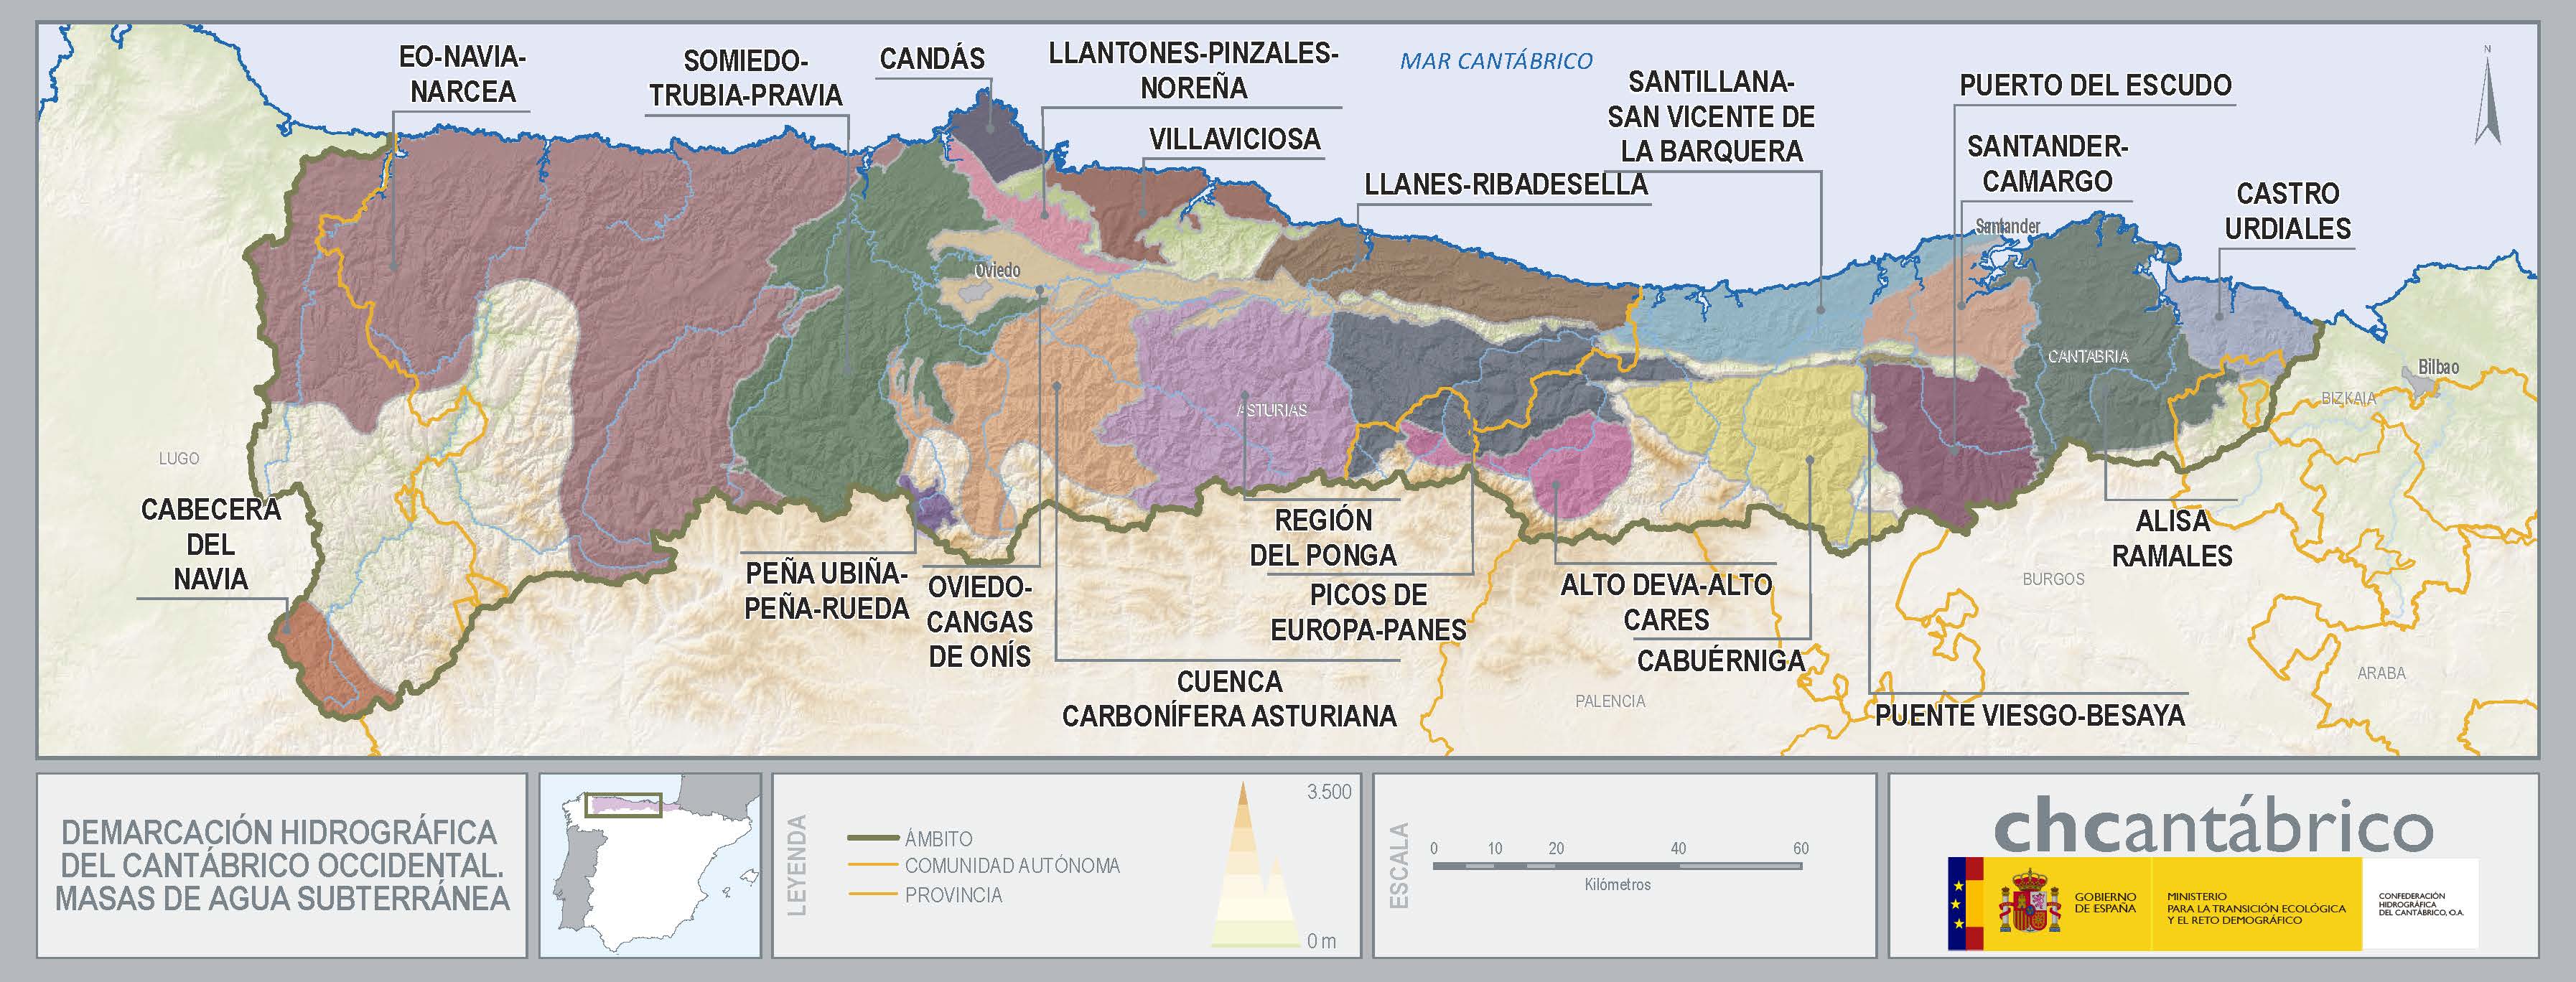 Mapa de la demarcación hidrográfica del cantábrico occidental. Masas de agua subterránea